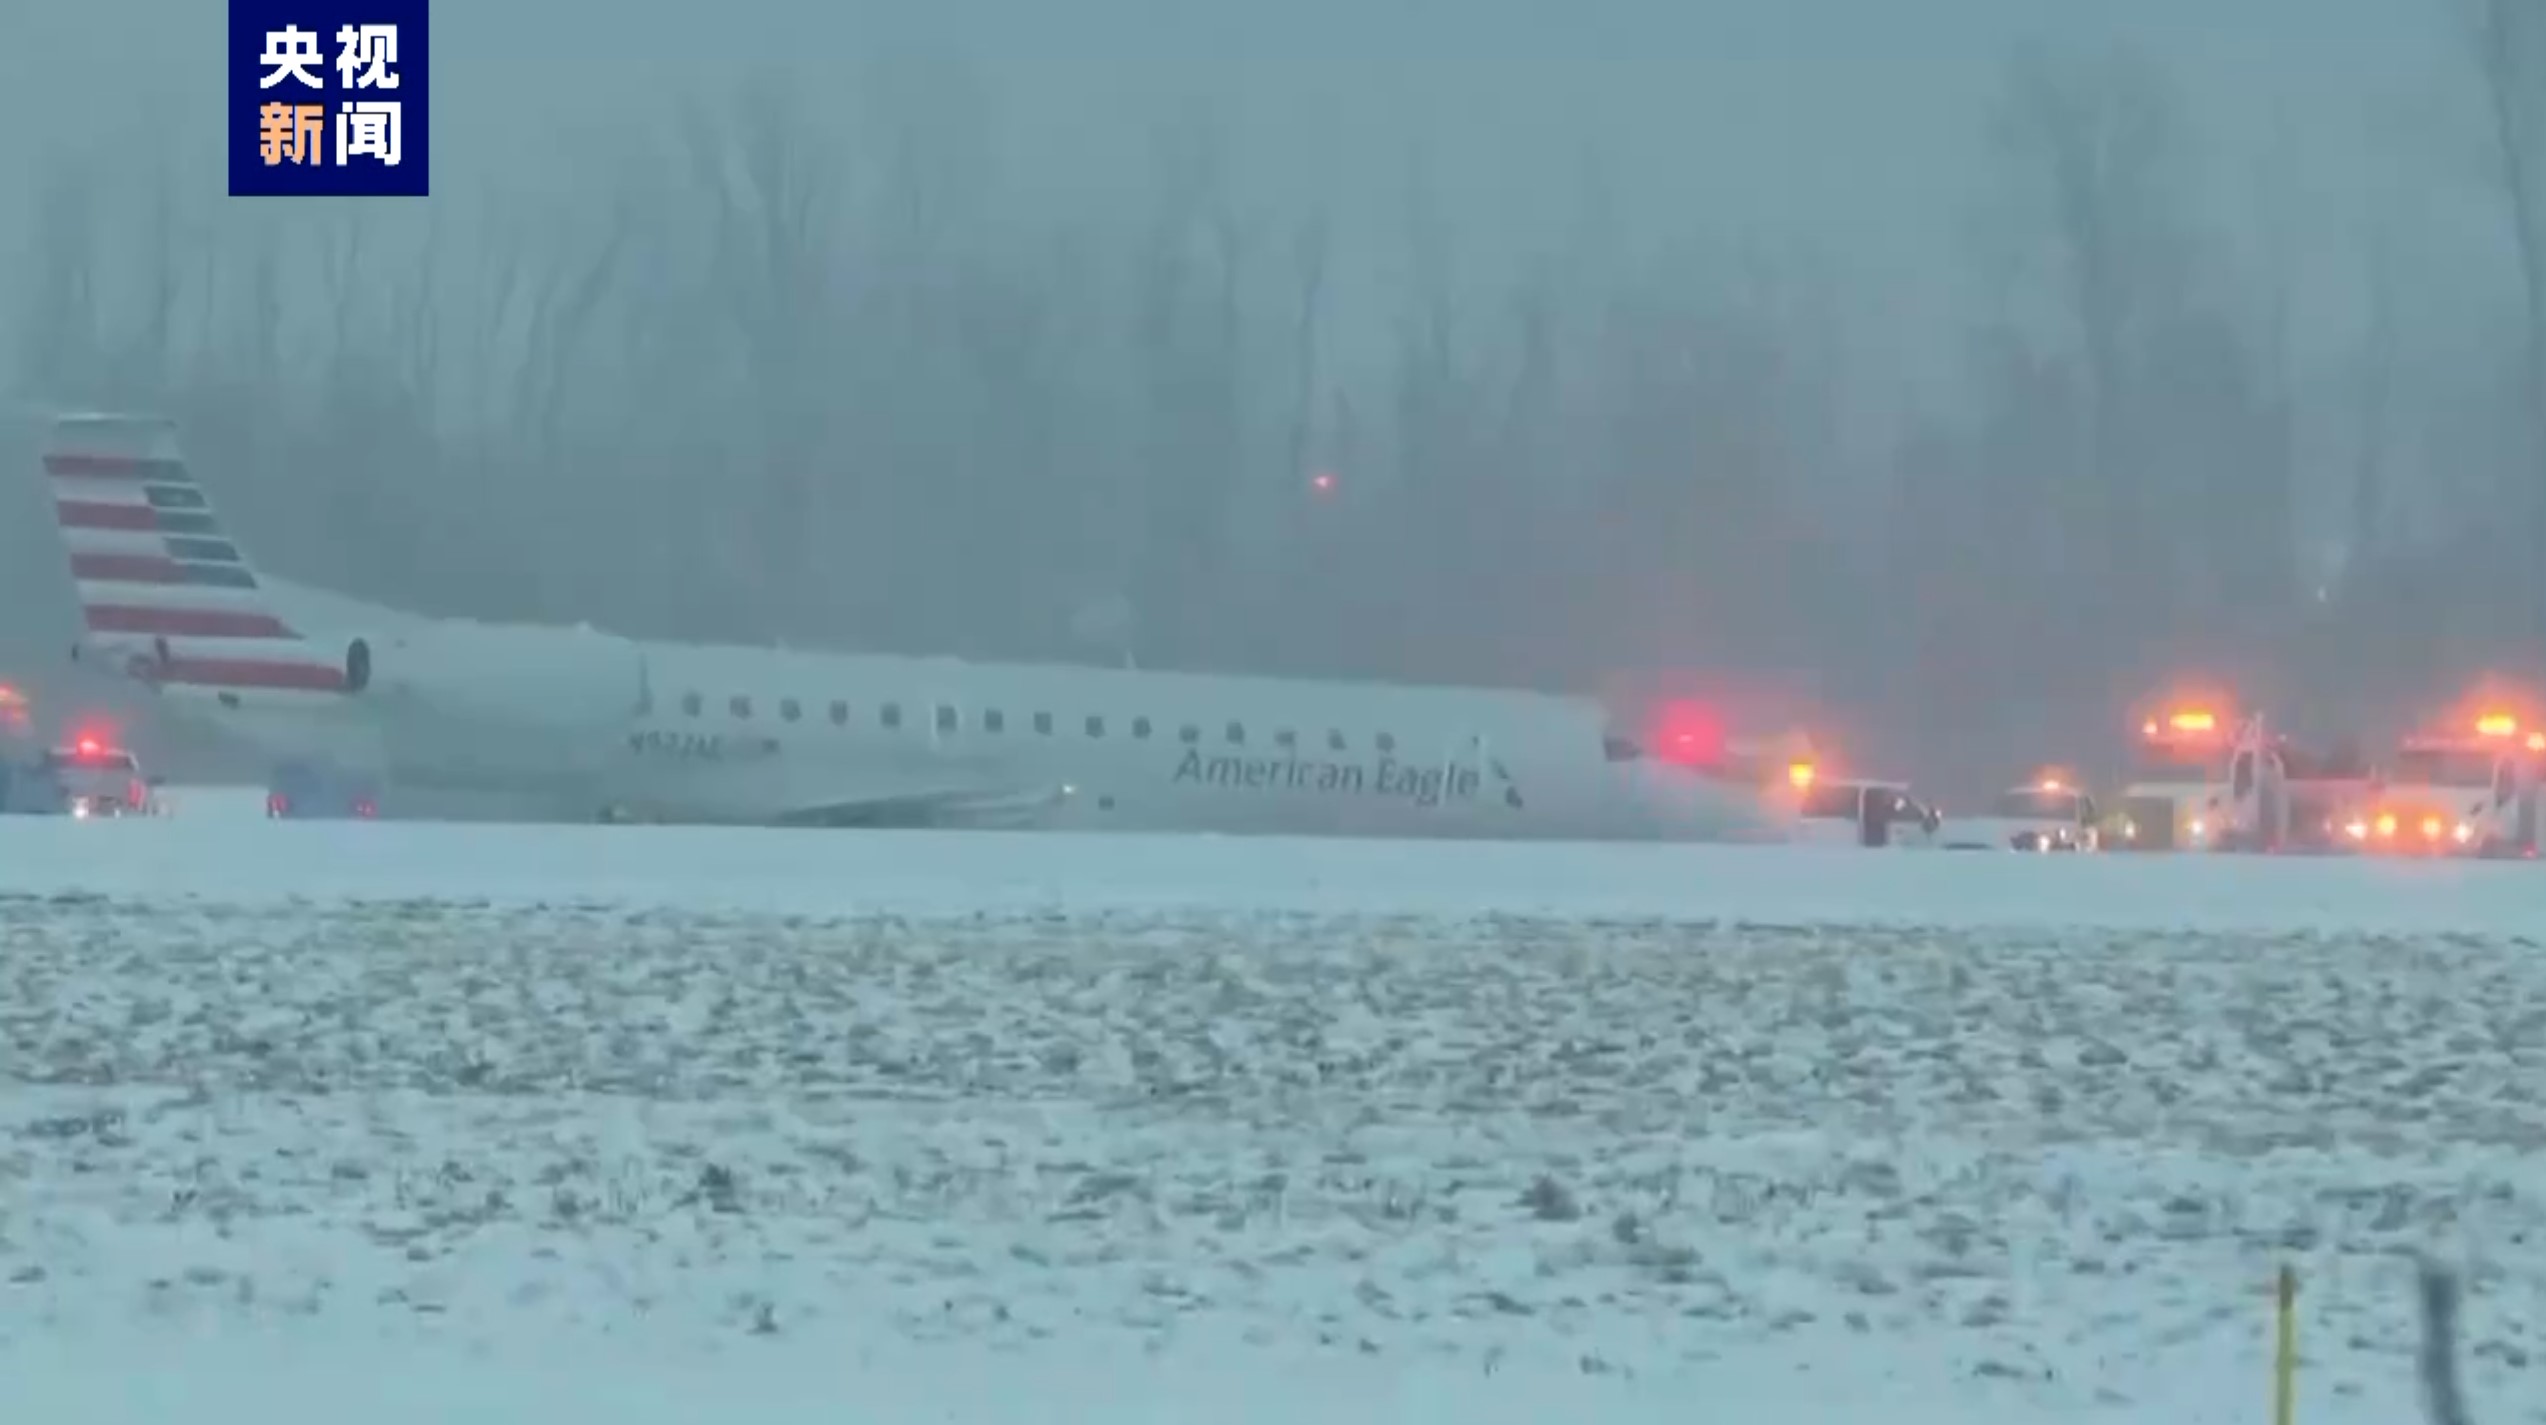 美国一客机降落时滑出跑道 无人员伤亡